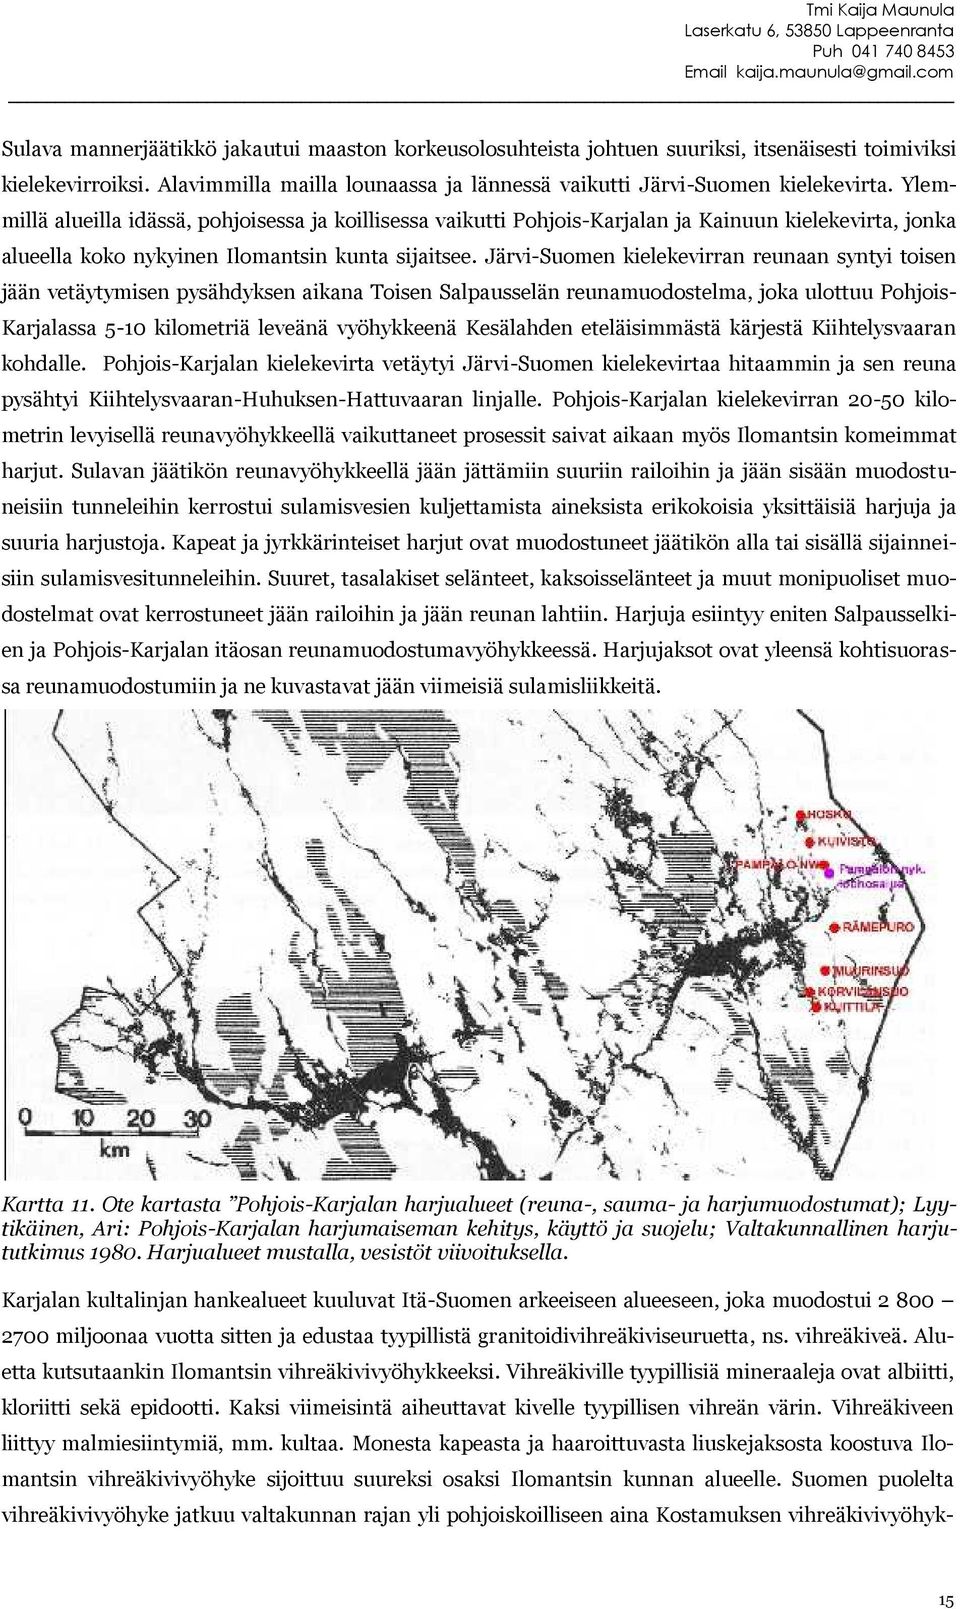 Järvi-Suomen kielekevirran reunaan syntyi toisen jään vetäytymisen pysähdyksen aikana Toisen Salpausselän reunamuodostelma, joka ulottuu PohjoisKarjalassa 5-10 kilometriä leveänä vyöhykkeenä